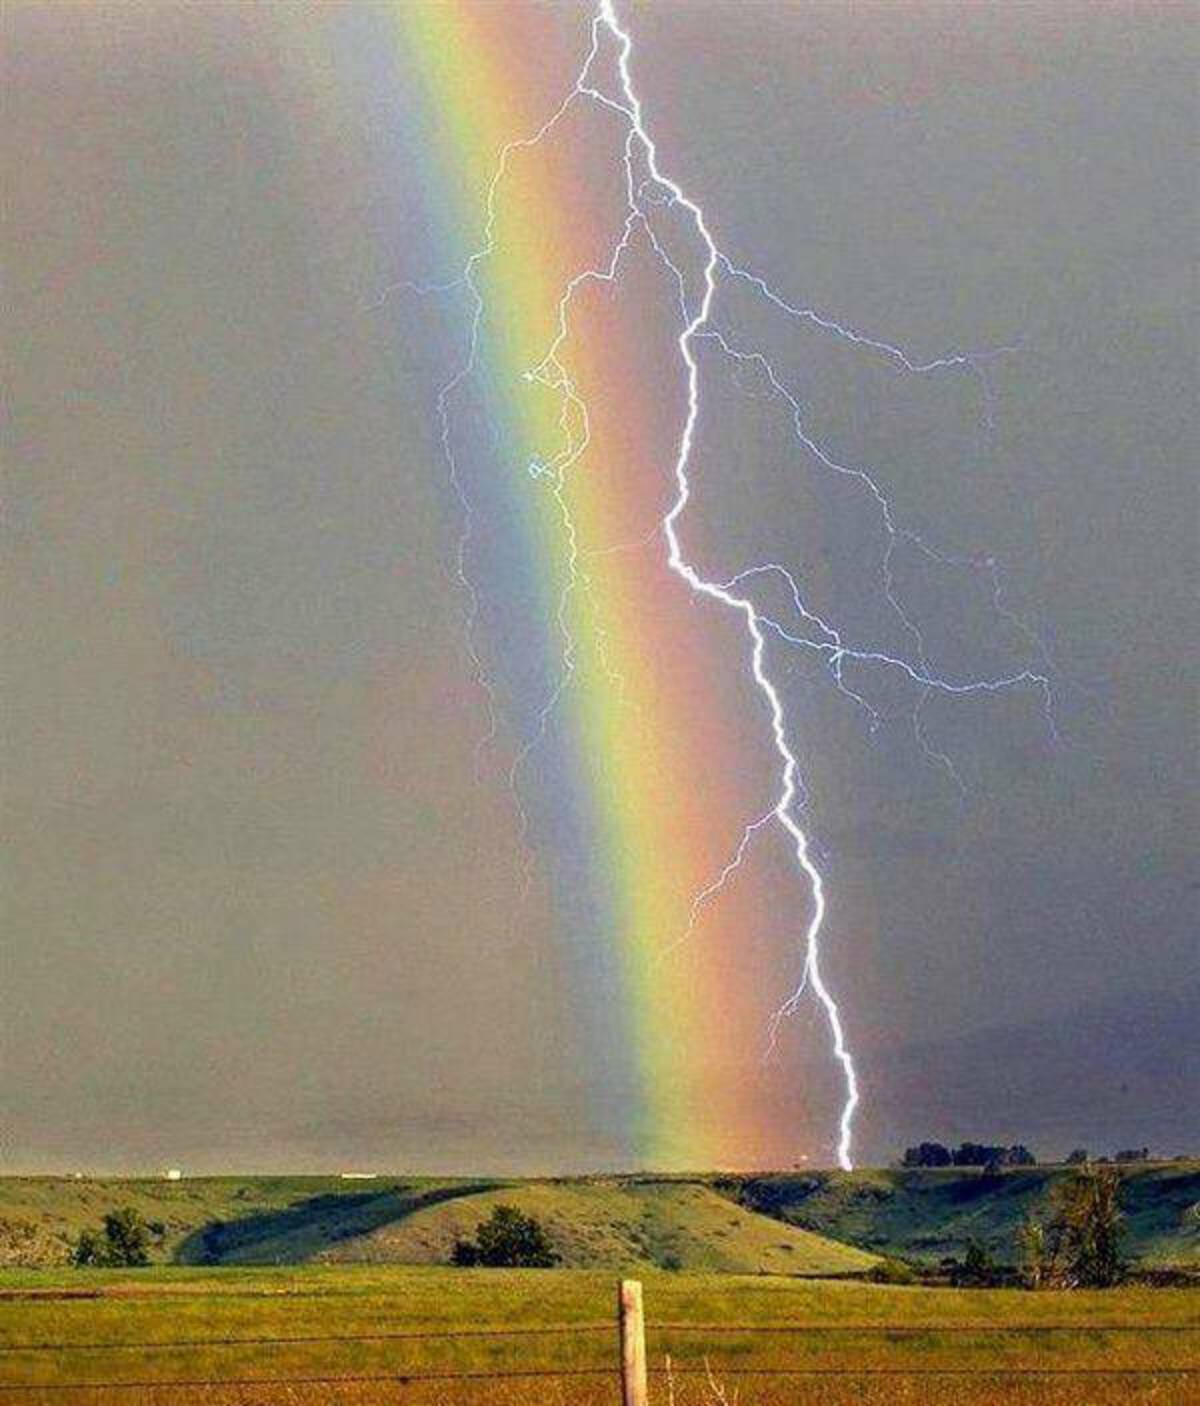 lightning and rainbow